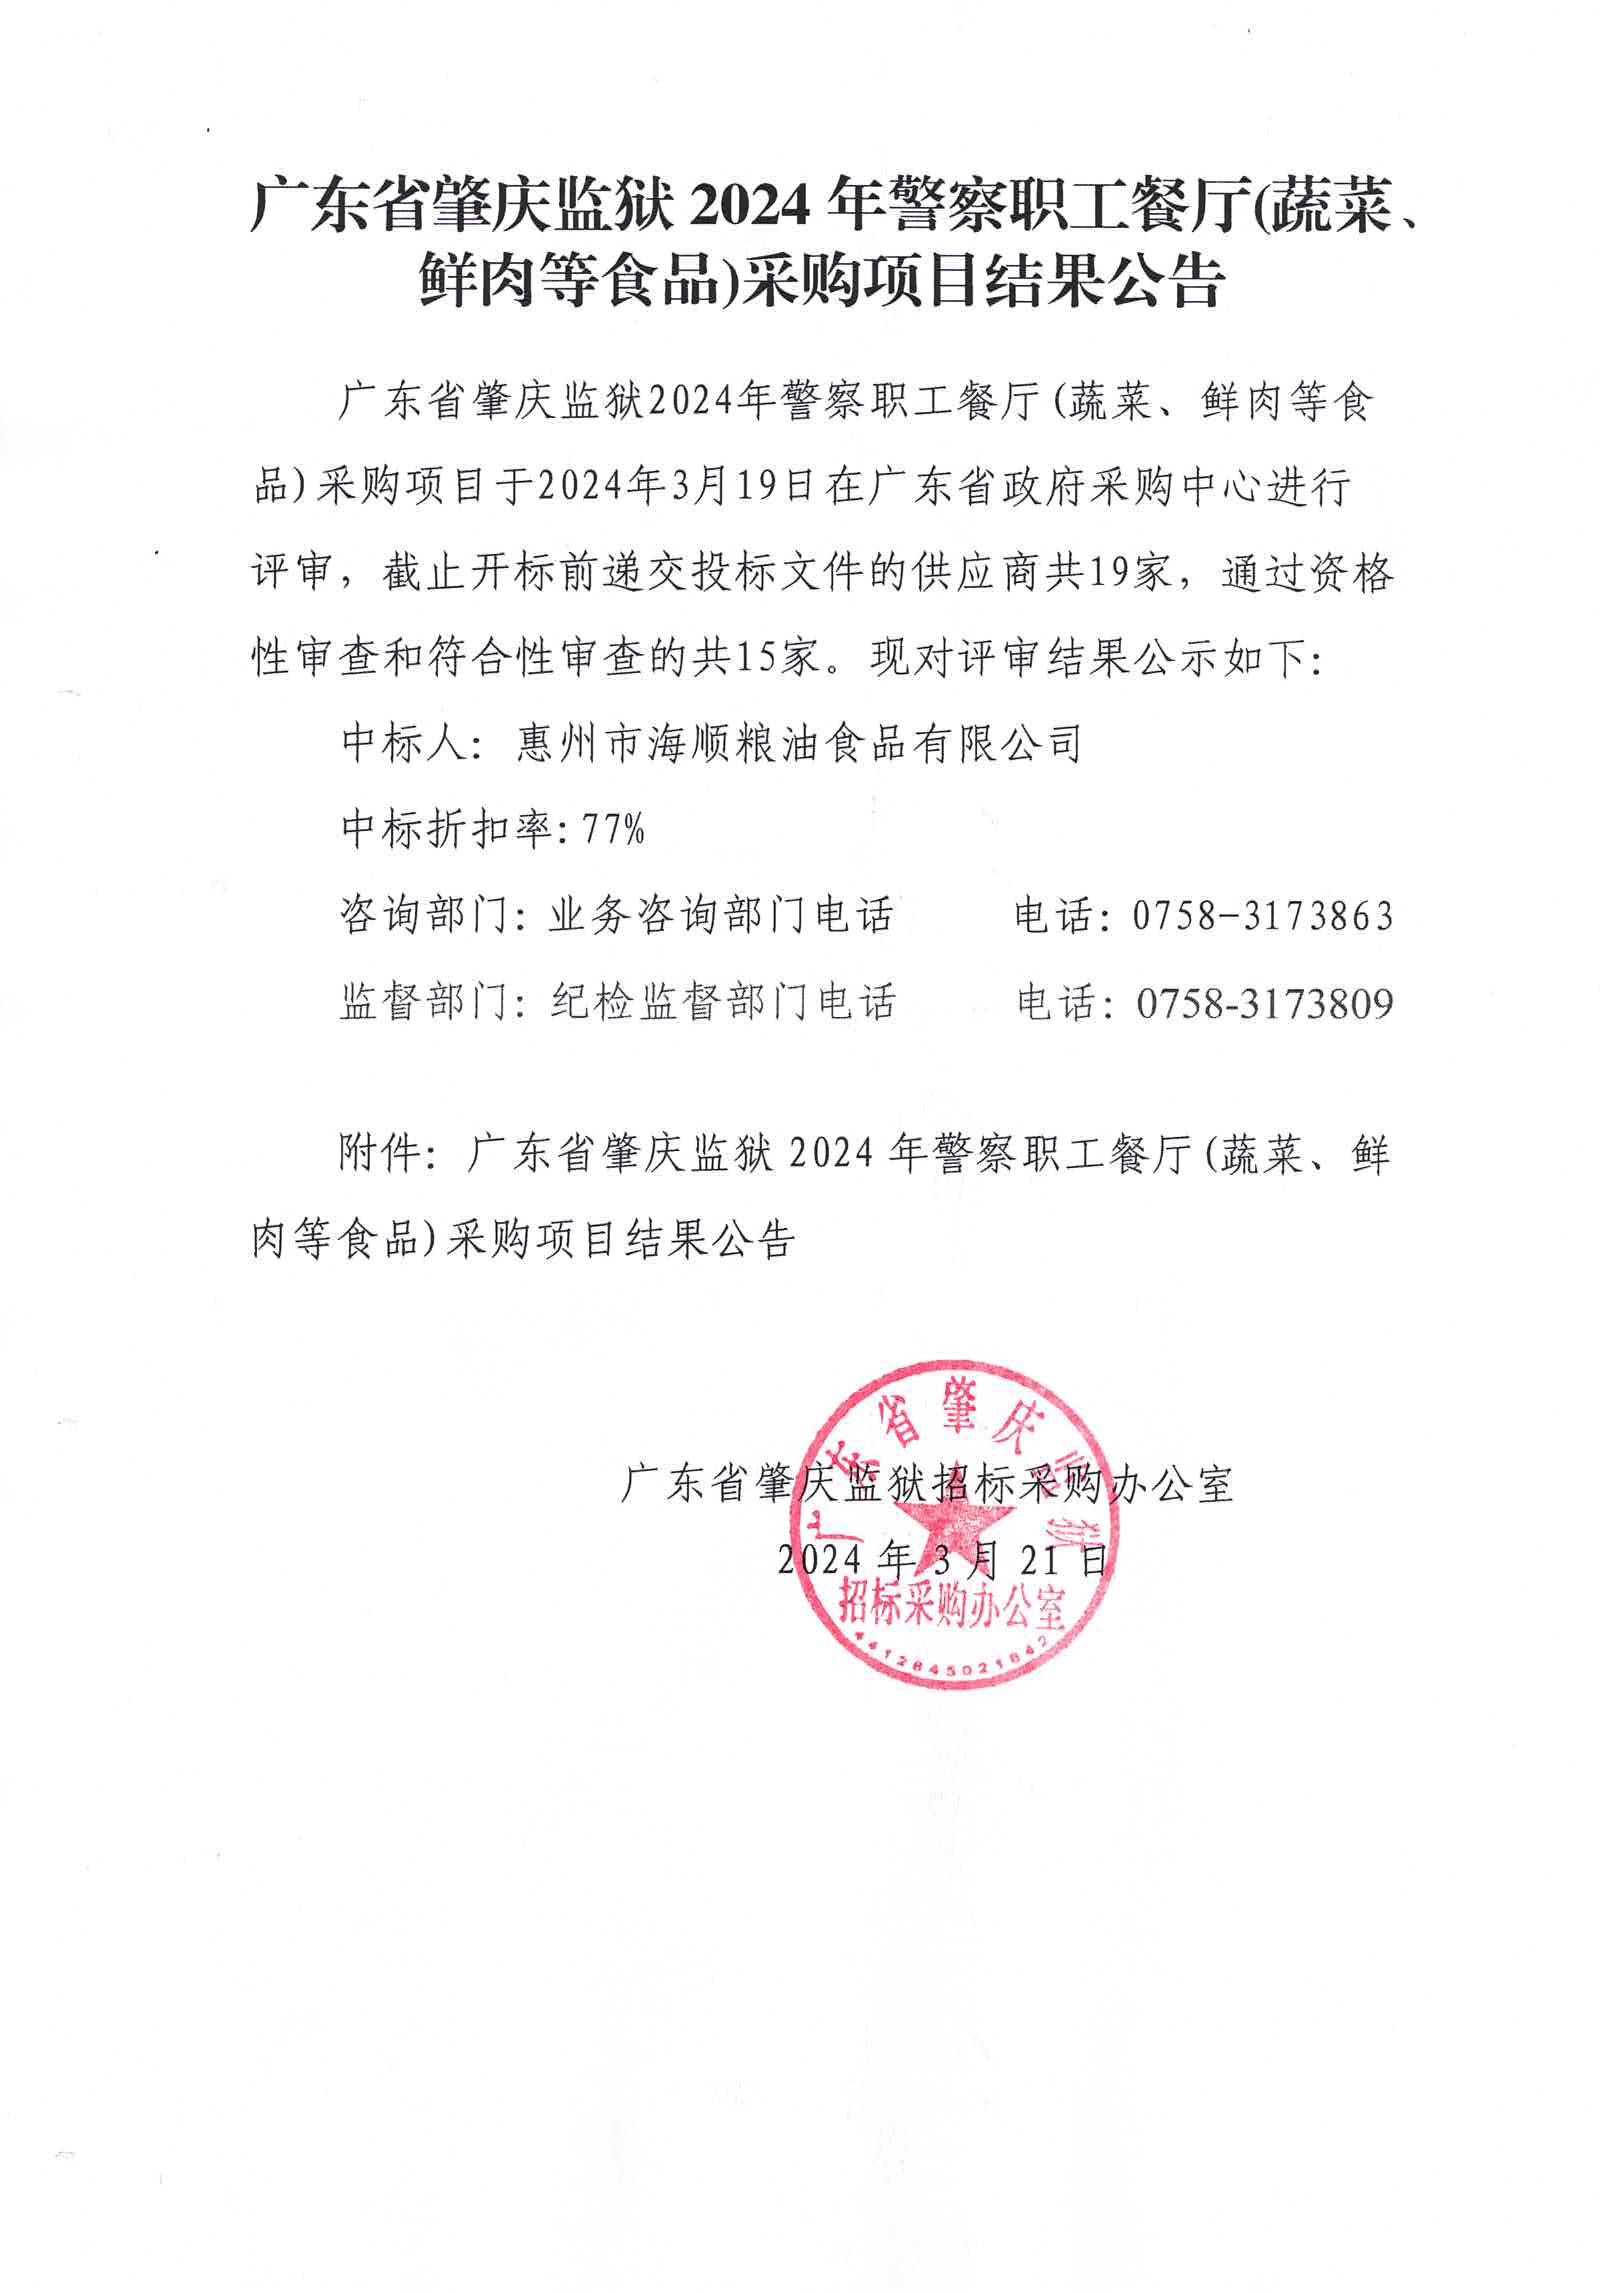 广东省肇庆监狱2024年警察职工餐厅(蔬菜、鲜肉等食品)采购项目结果公告.jpg